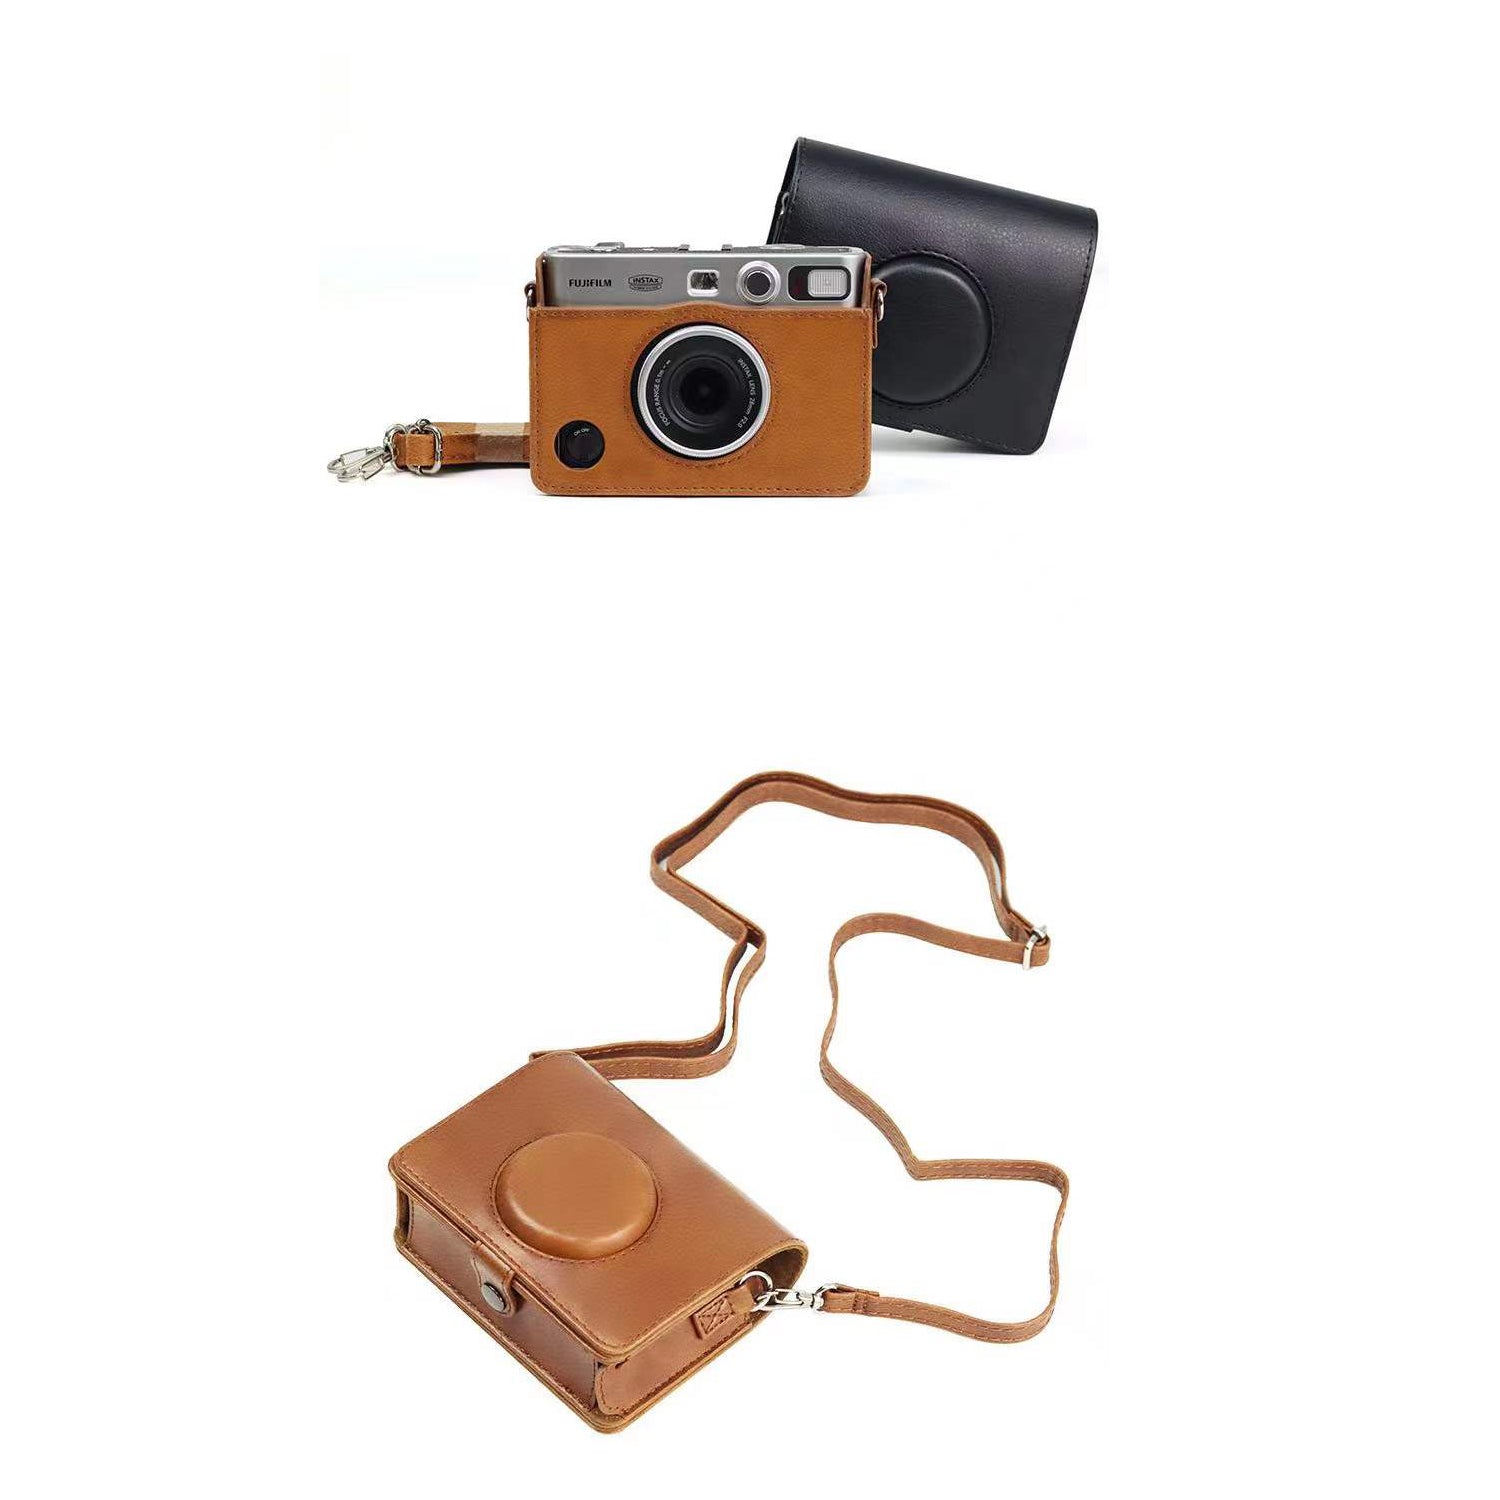 Zenko Mini Evo Case for Fujifilm Instax Mini Evo Instant Camera (brown)